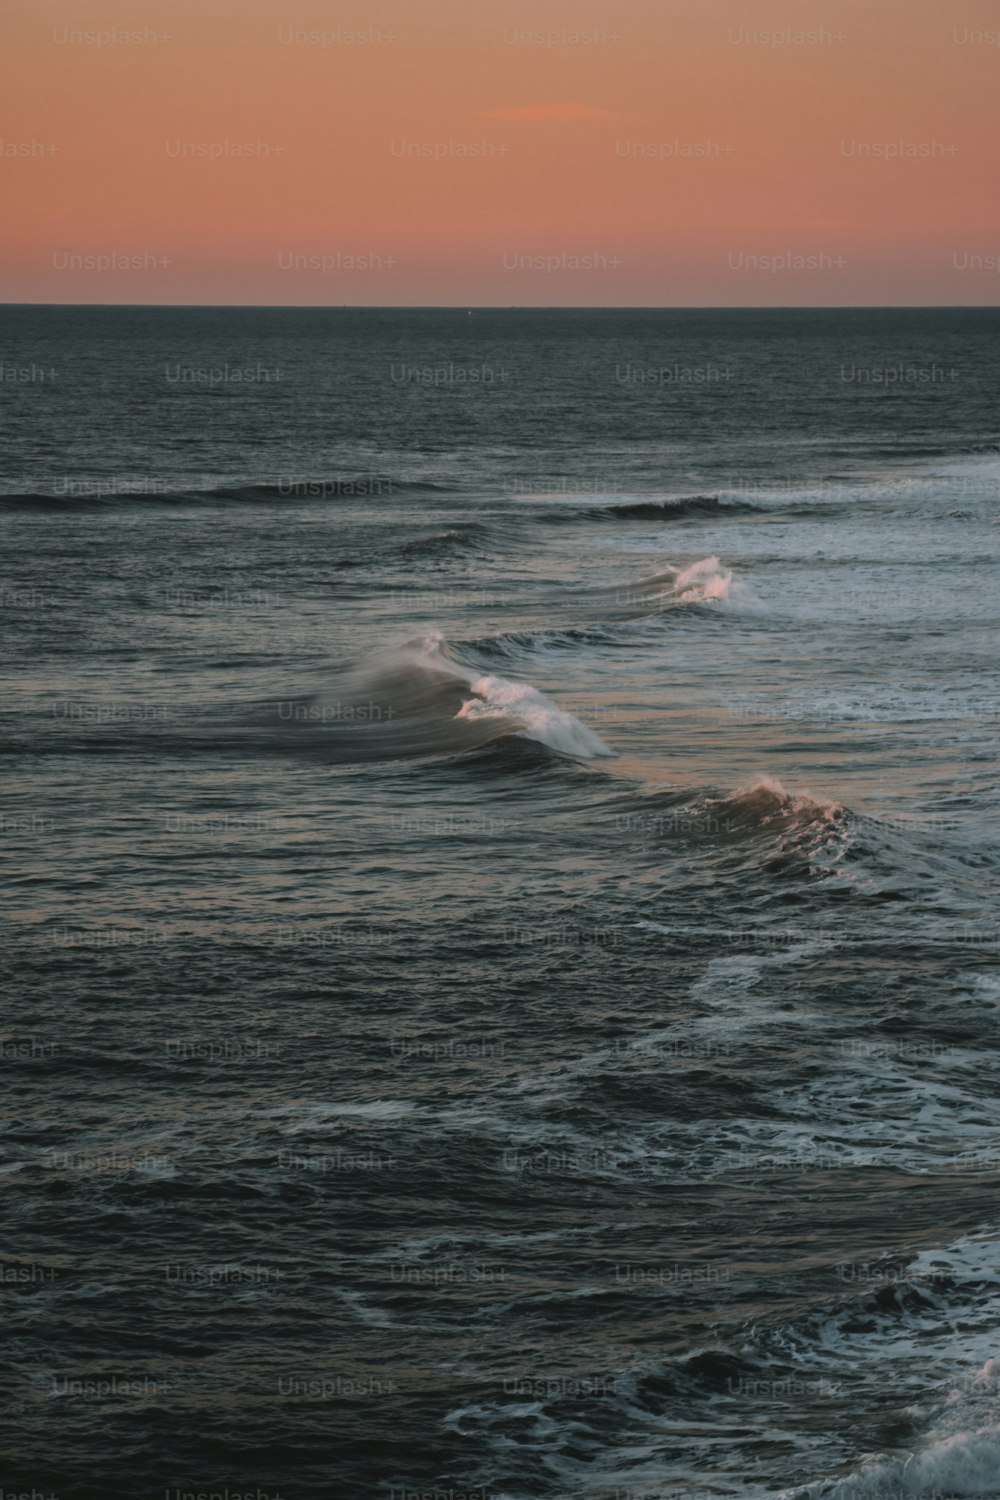 Le soleil se couche sur les vagues de l’océan